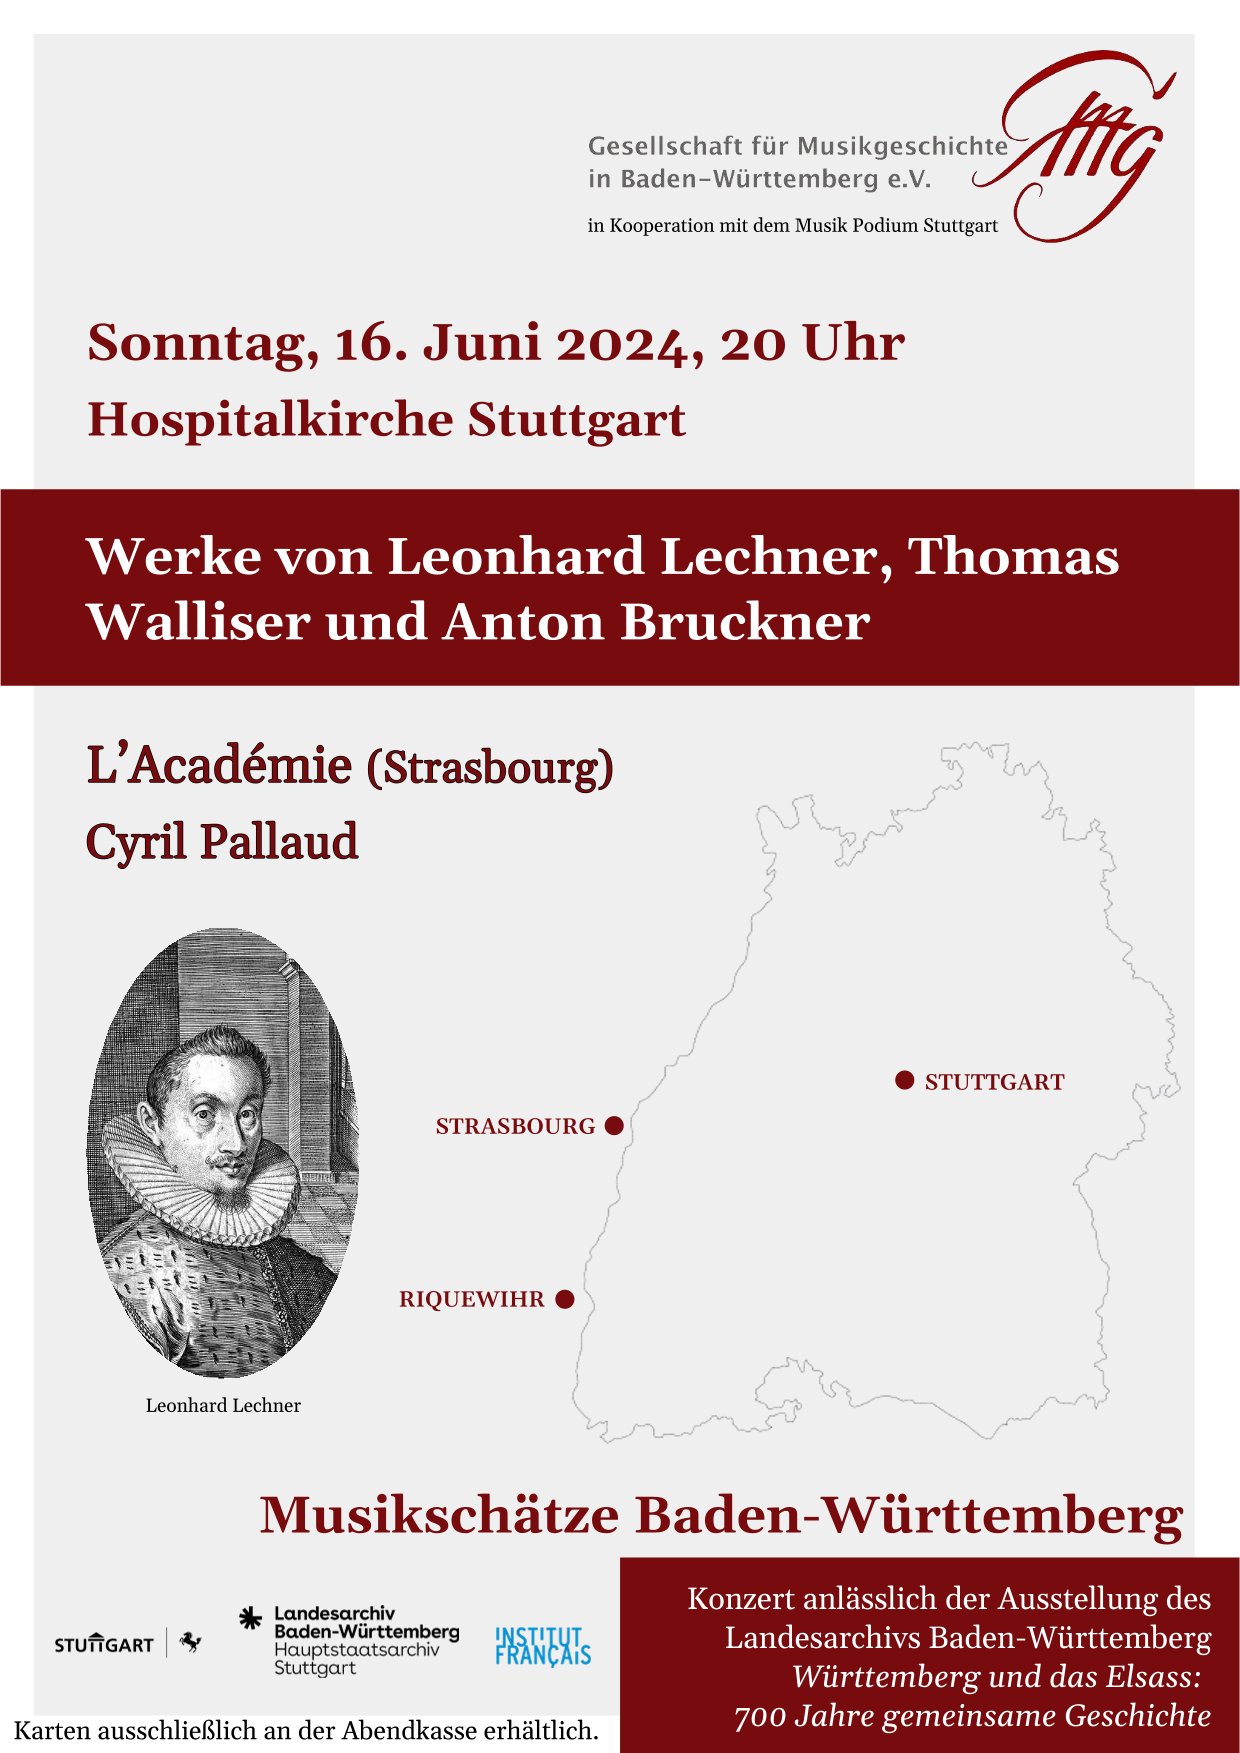 Am 16.6. findet im Rahmen des Belgleitprogramms zur Ausstellung Württemberg und das Elsass ein Konzert in der Hospitalkirche Stuttgart statt.